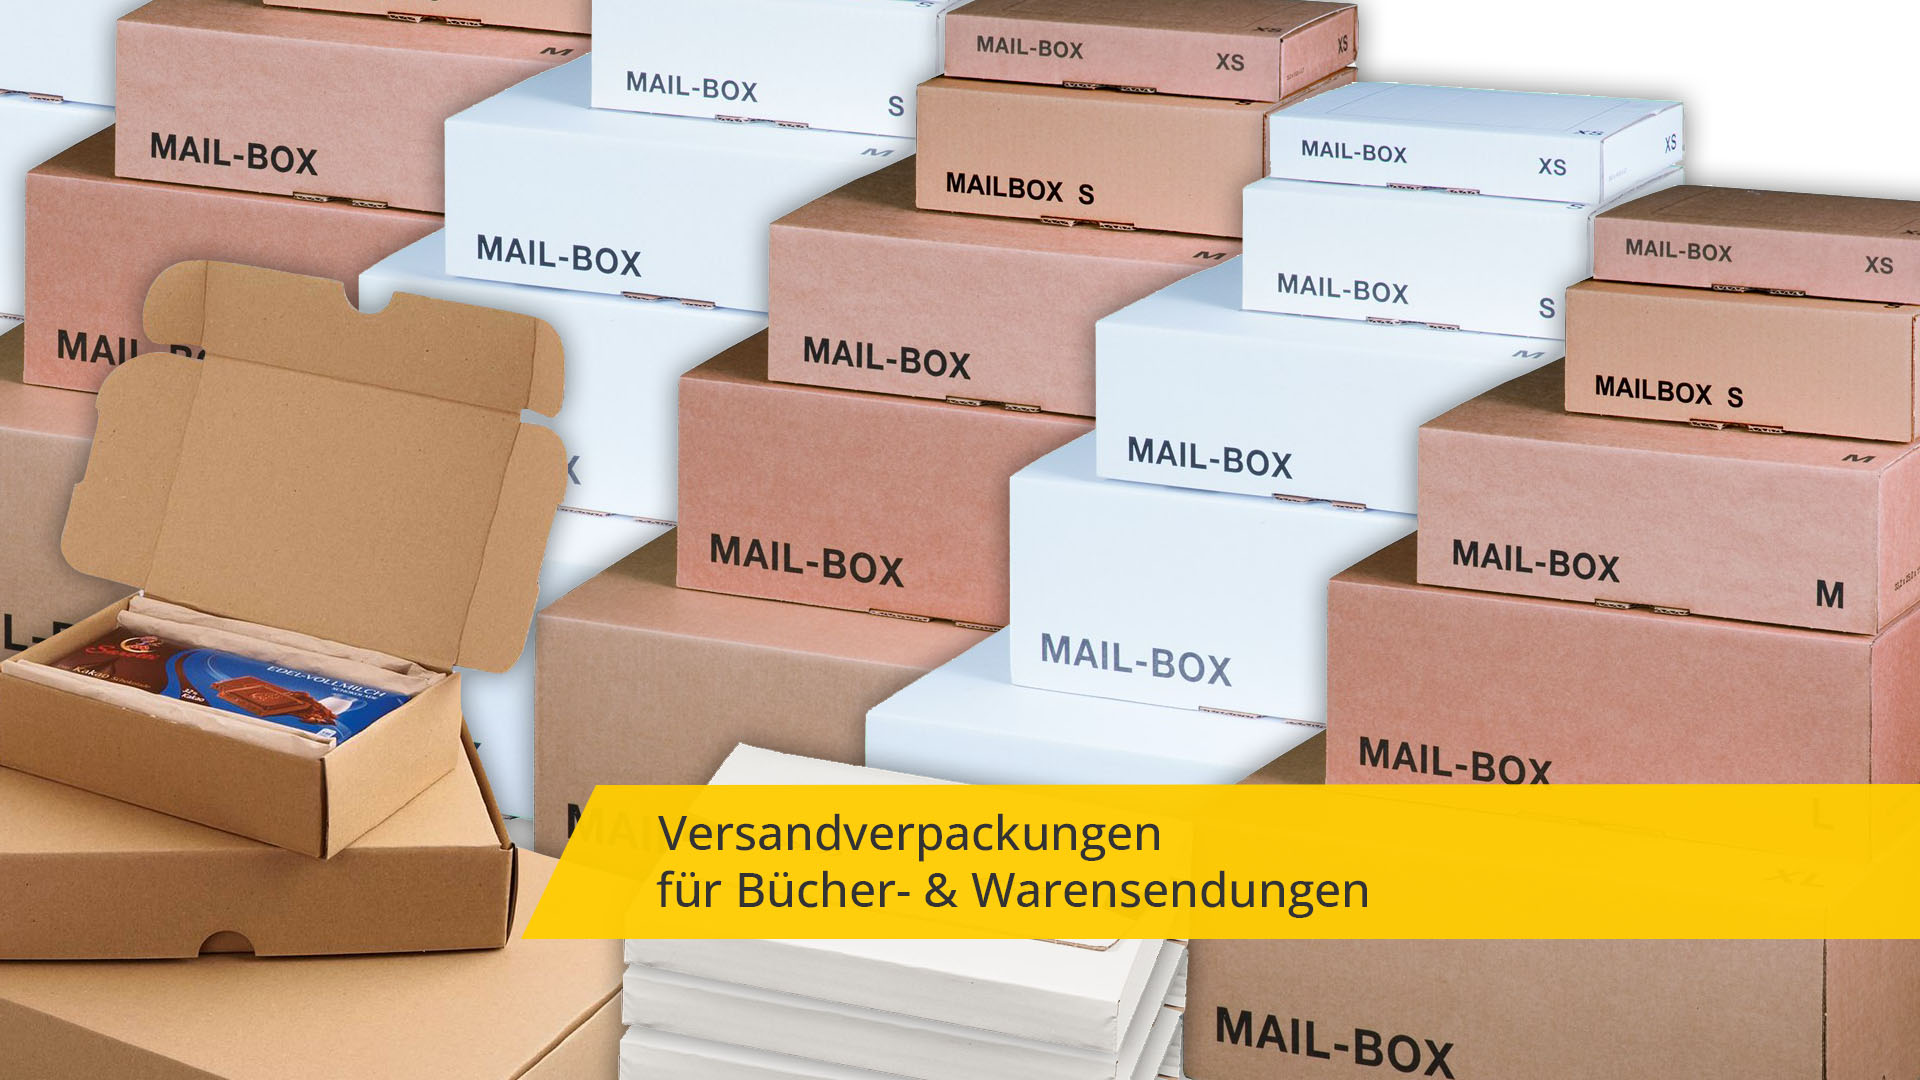 E-Commerce Versandverpackungen: Sichere und zuverlässige Verpackungslösungen für Bücher, Waren und vieles mehr.